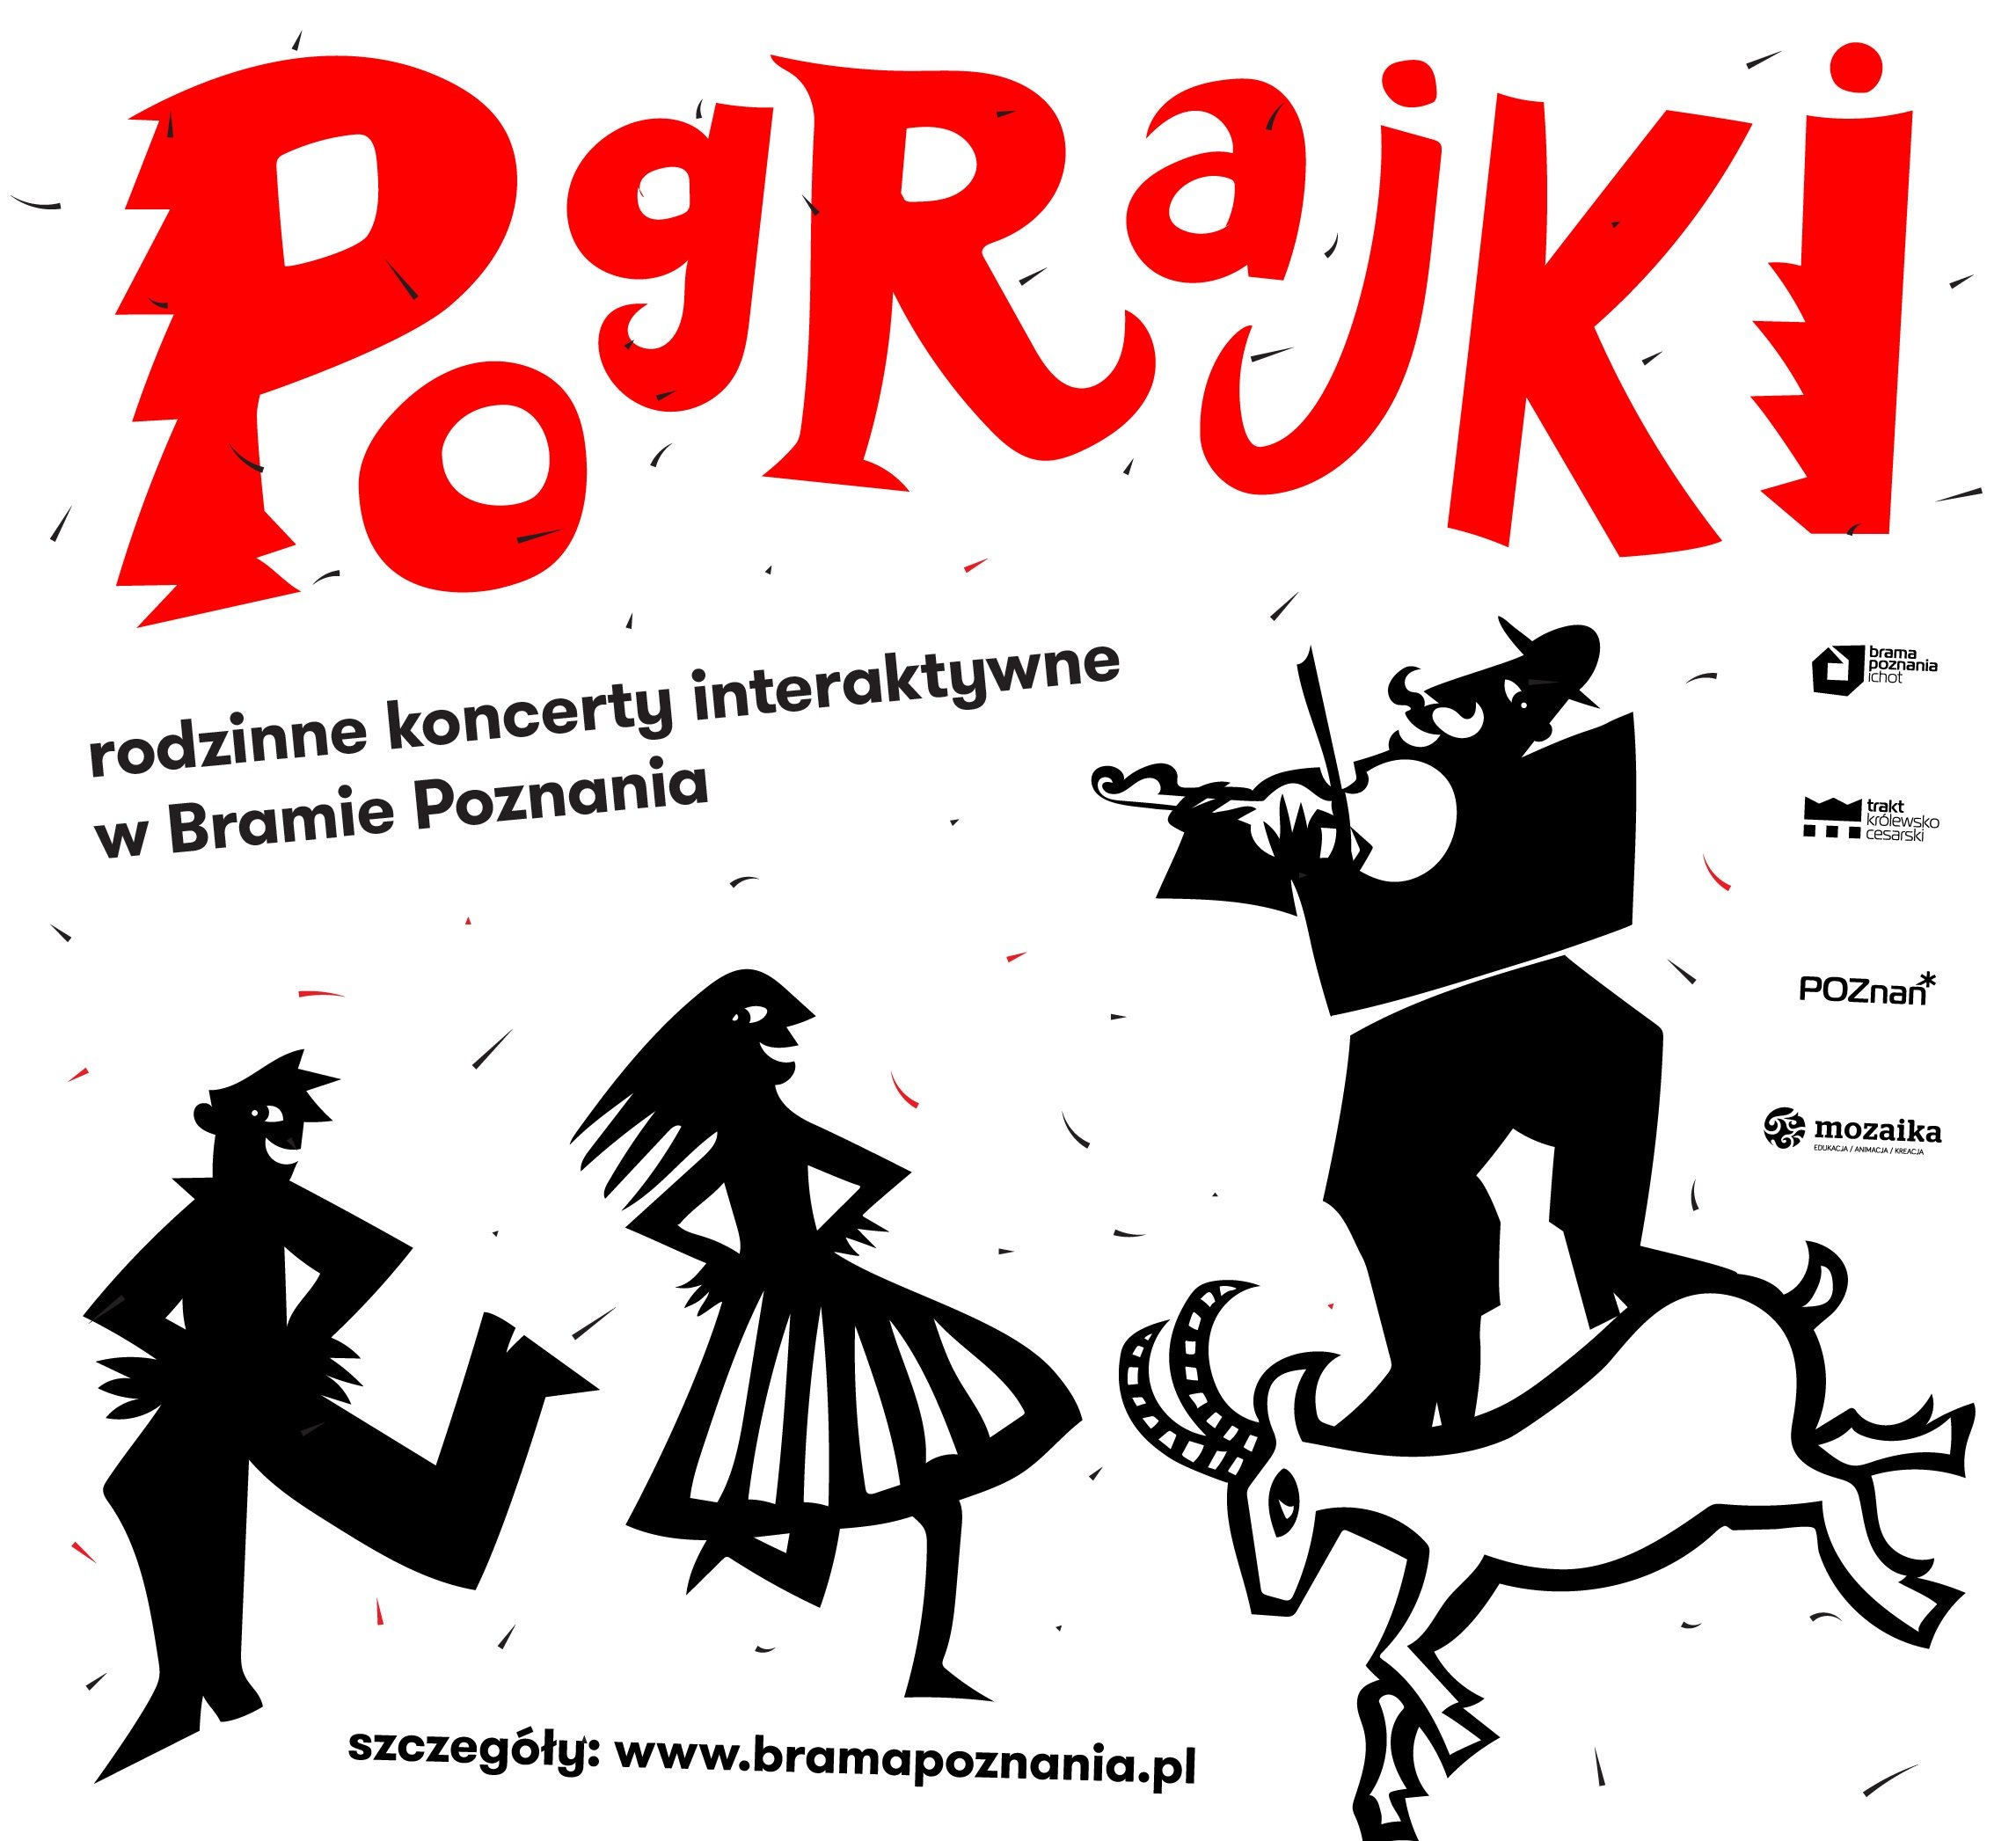 Pograjki – rodzinne koncerty interaktywne w Bramie Poznania